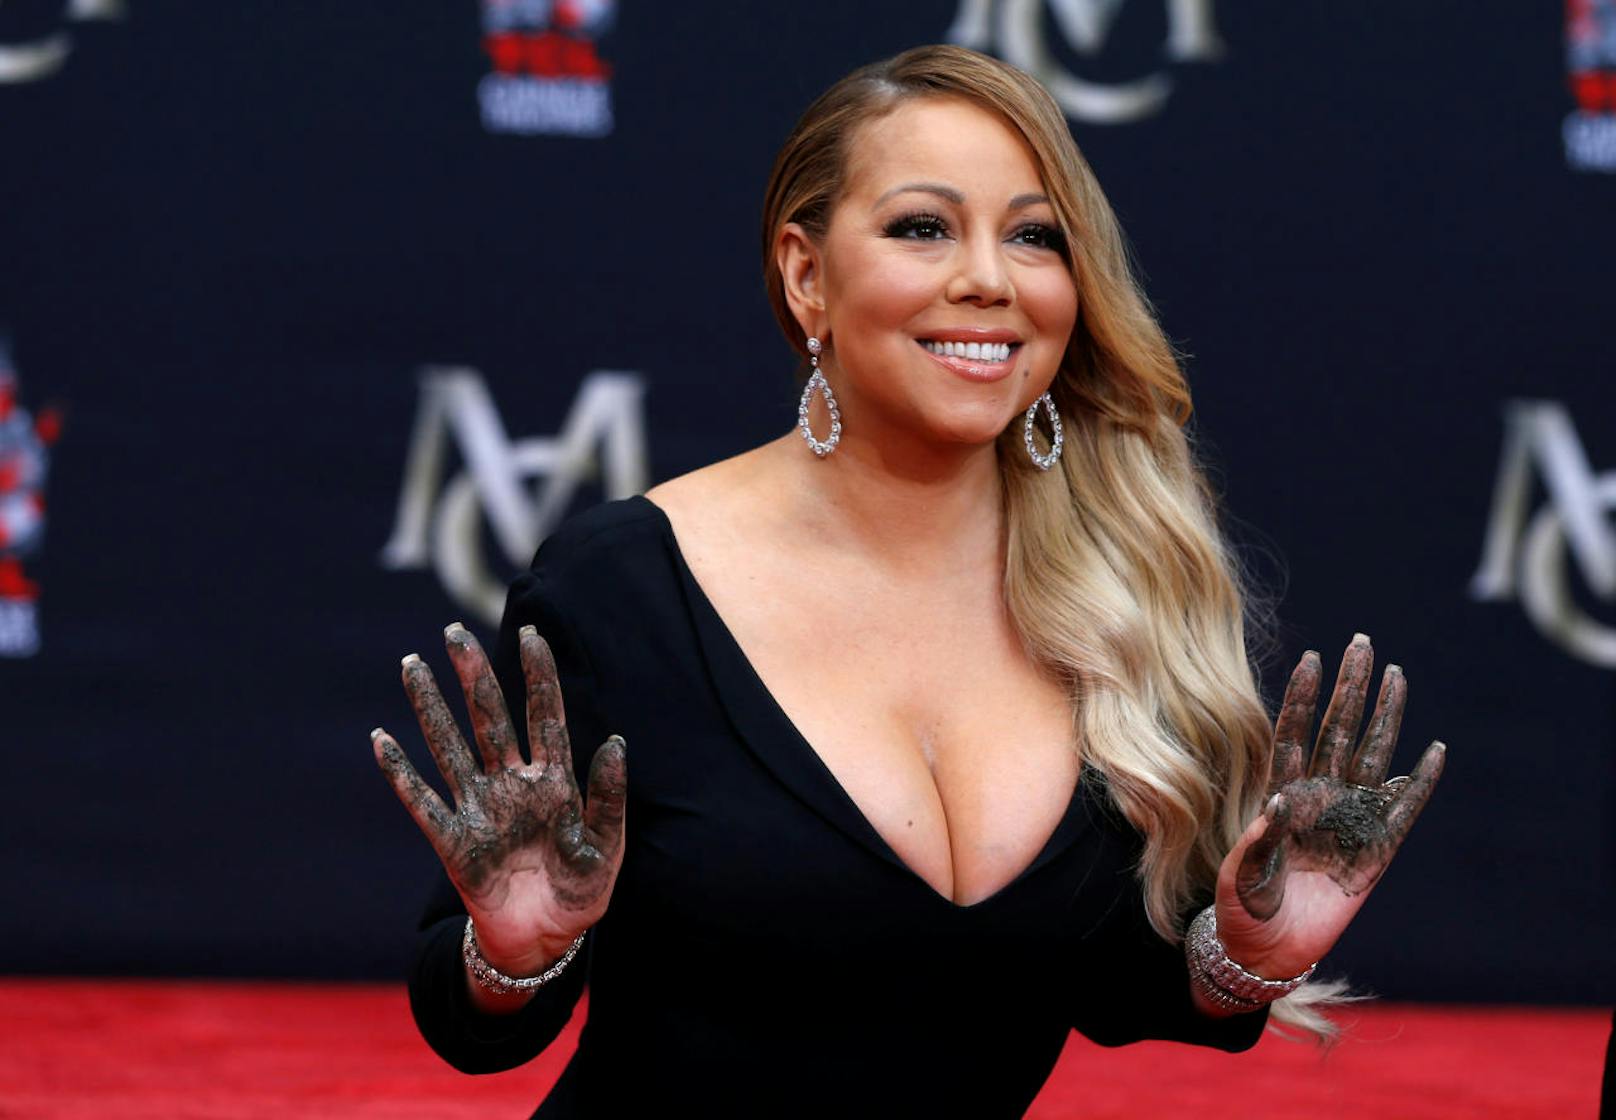 Mariah Careys ehemaliger Bodyguard behauptet, dass sie ihn während einer Reise sexuell belästigt hat. Unter dem Vorwand, Hilfe beim Gepäck zu benötigen, rief sie ihn auf ihre Hotelzimmer. Dort wartete sie in transparentem Negligé auf ihn. Außerdem hat sie ihn angeblich erniedrigt und als "Nazi" beschimpft.